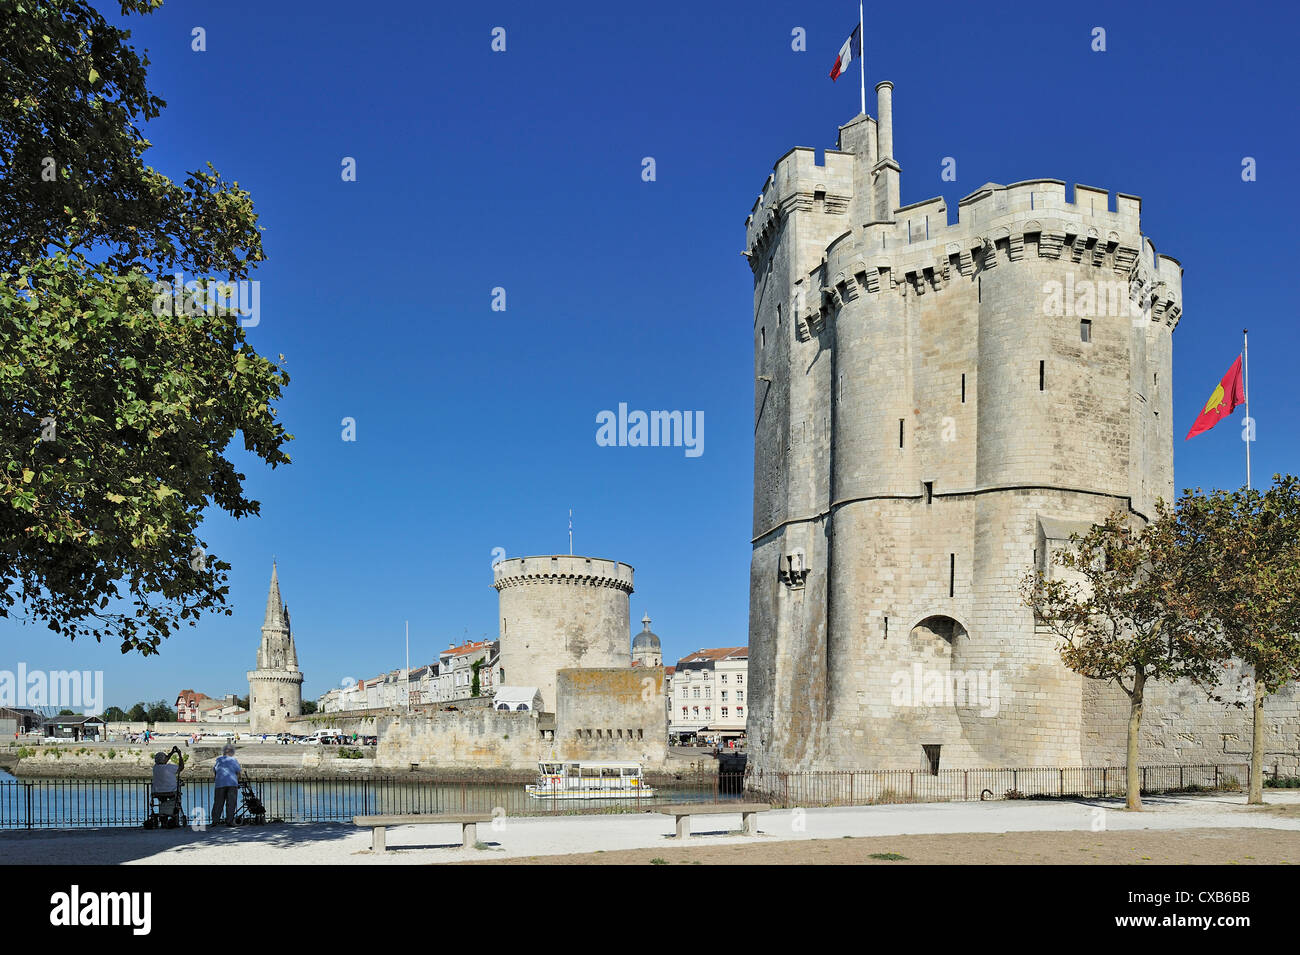 Les tours Tour de la chaîne et tour Saint-Nicolas dans le vieux port / Vieux-Port de La Rochelle, Charente-Maritime, France Banque D'Images